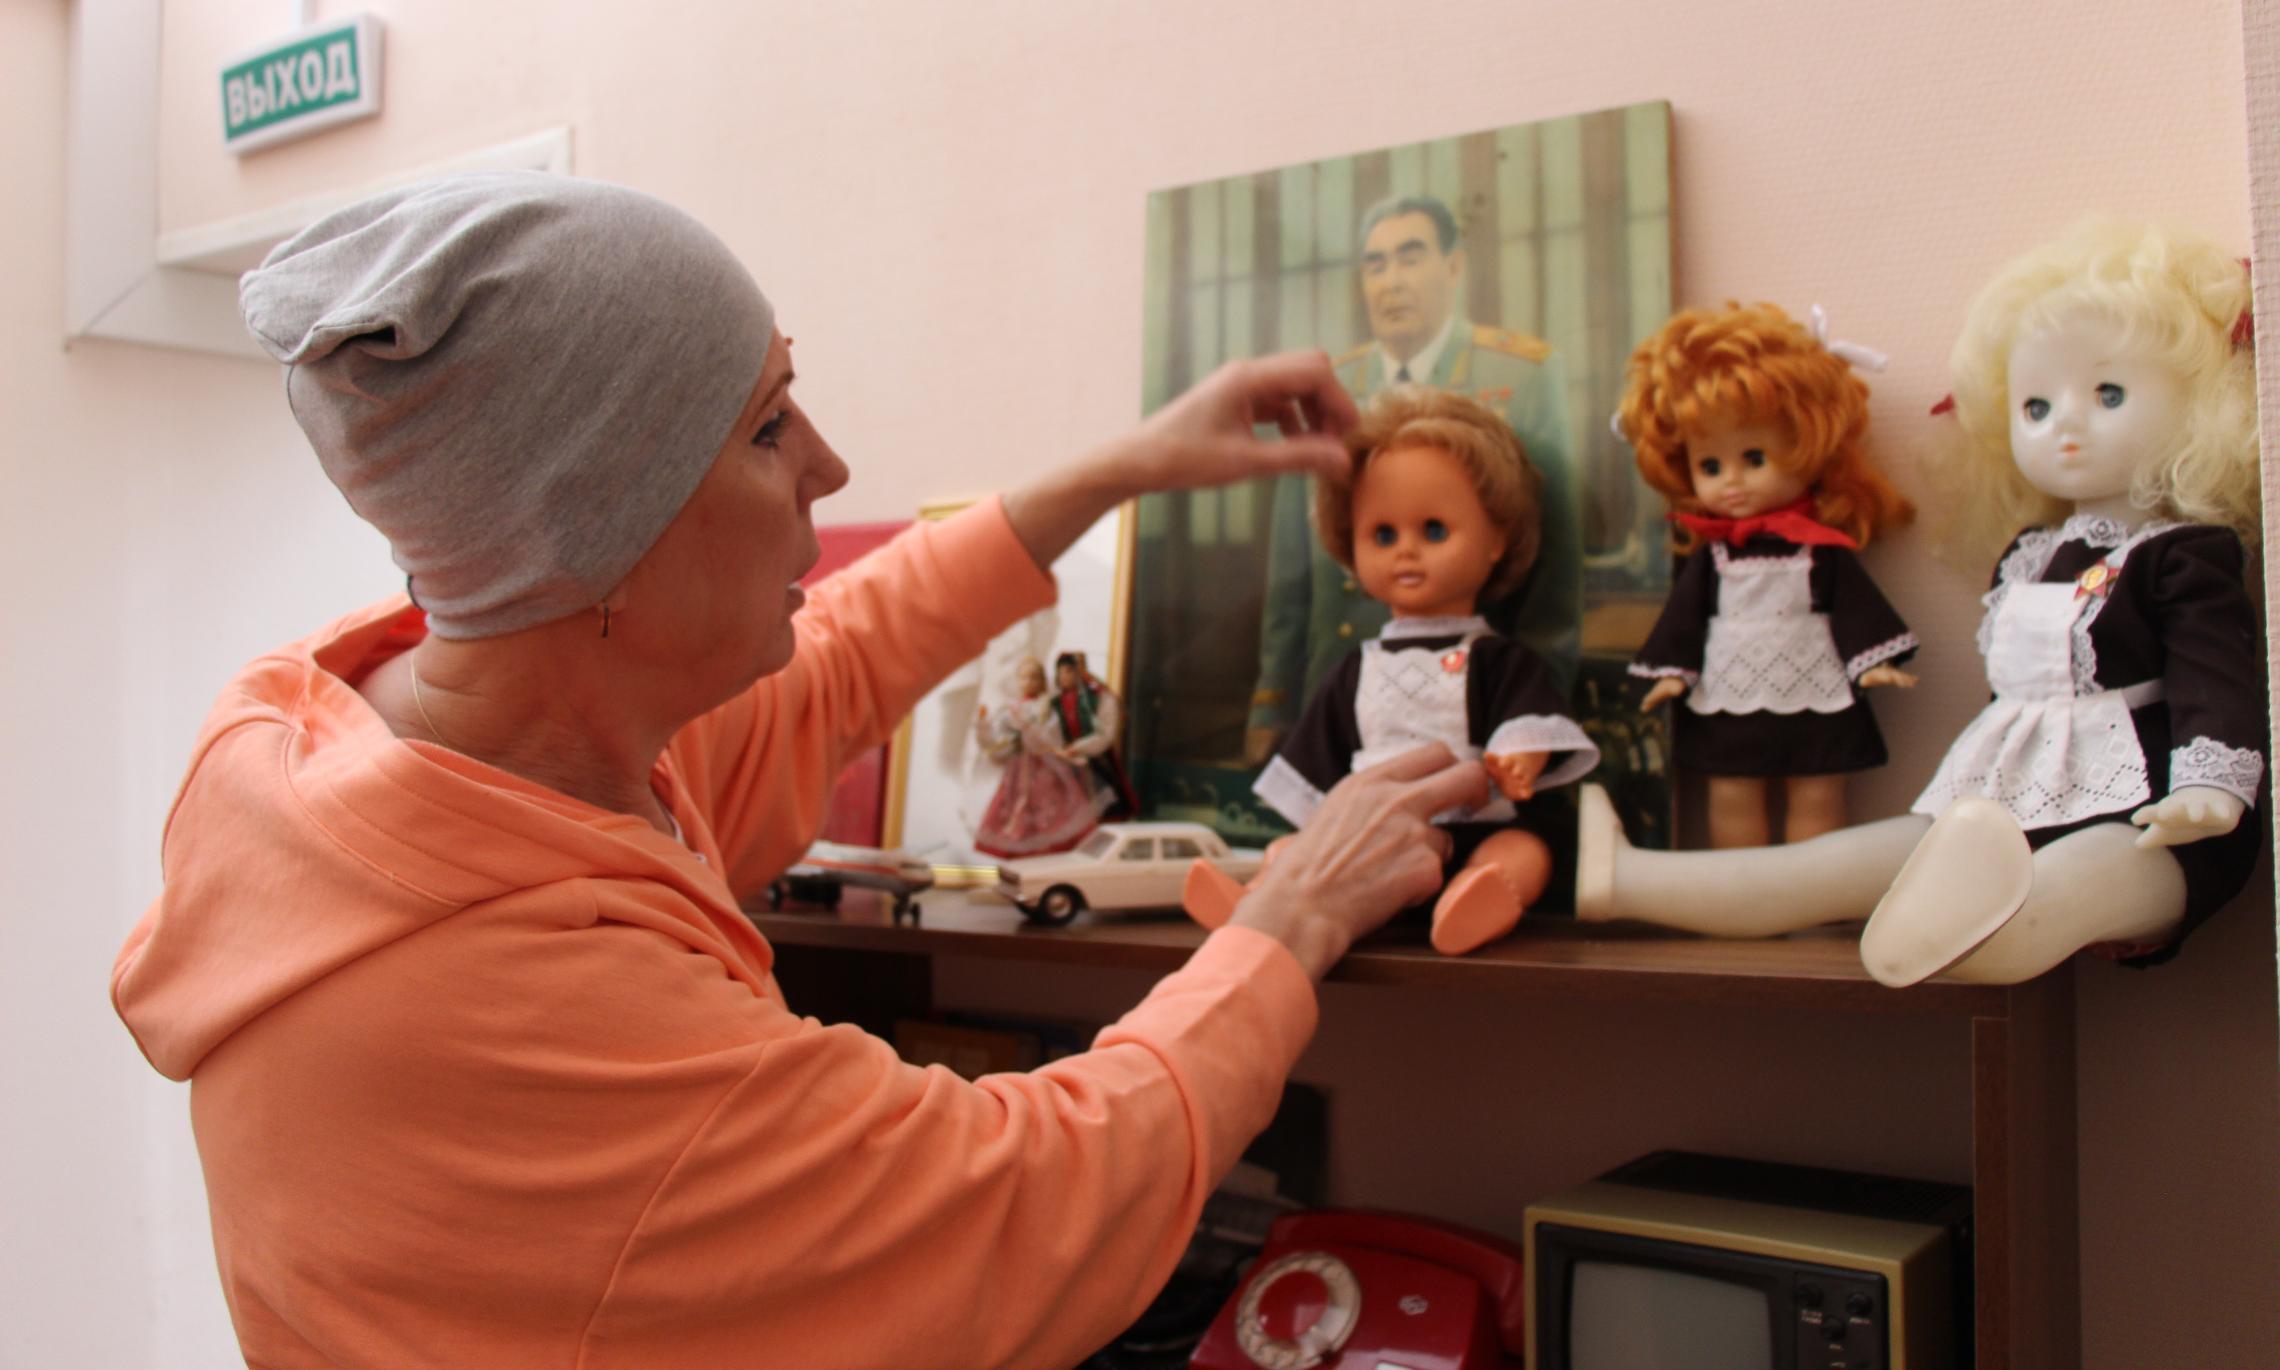 Этих кукол для «Реликвария» в совете ветеранов Светлана Юрьевна находила сама. Крайнюю справа, блондинку, спасла из мусорки.